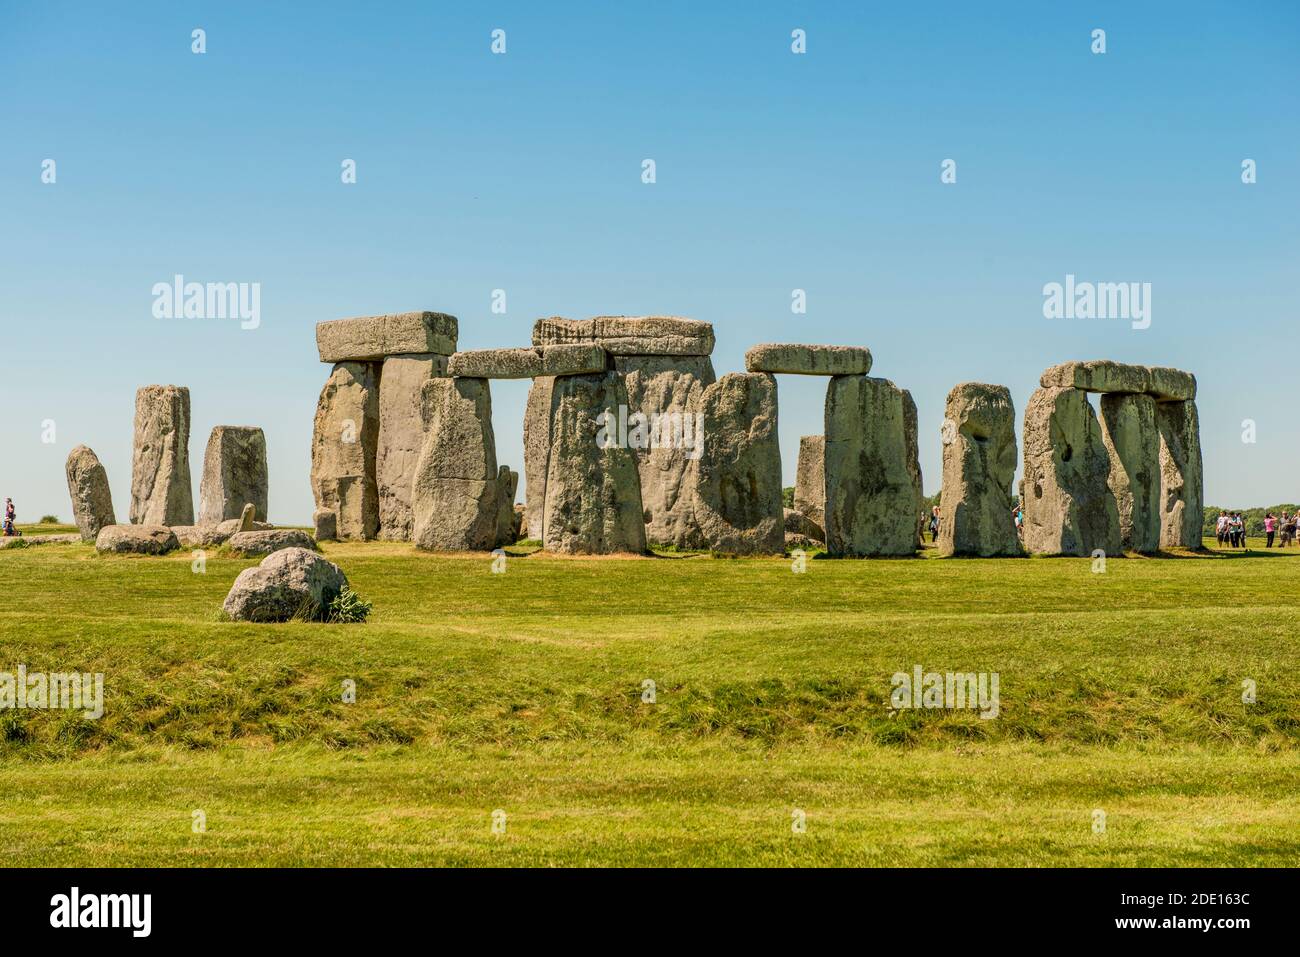 Monument néolithique de Stonehenge, site classé au patrimoine mondial de l'UNESCO, plaine de Salisbury, Salisbury, Wiltshire, Angleterre, Royaume-Uni, Europe Banque D'Images